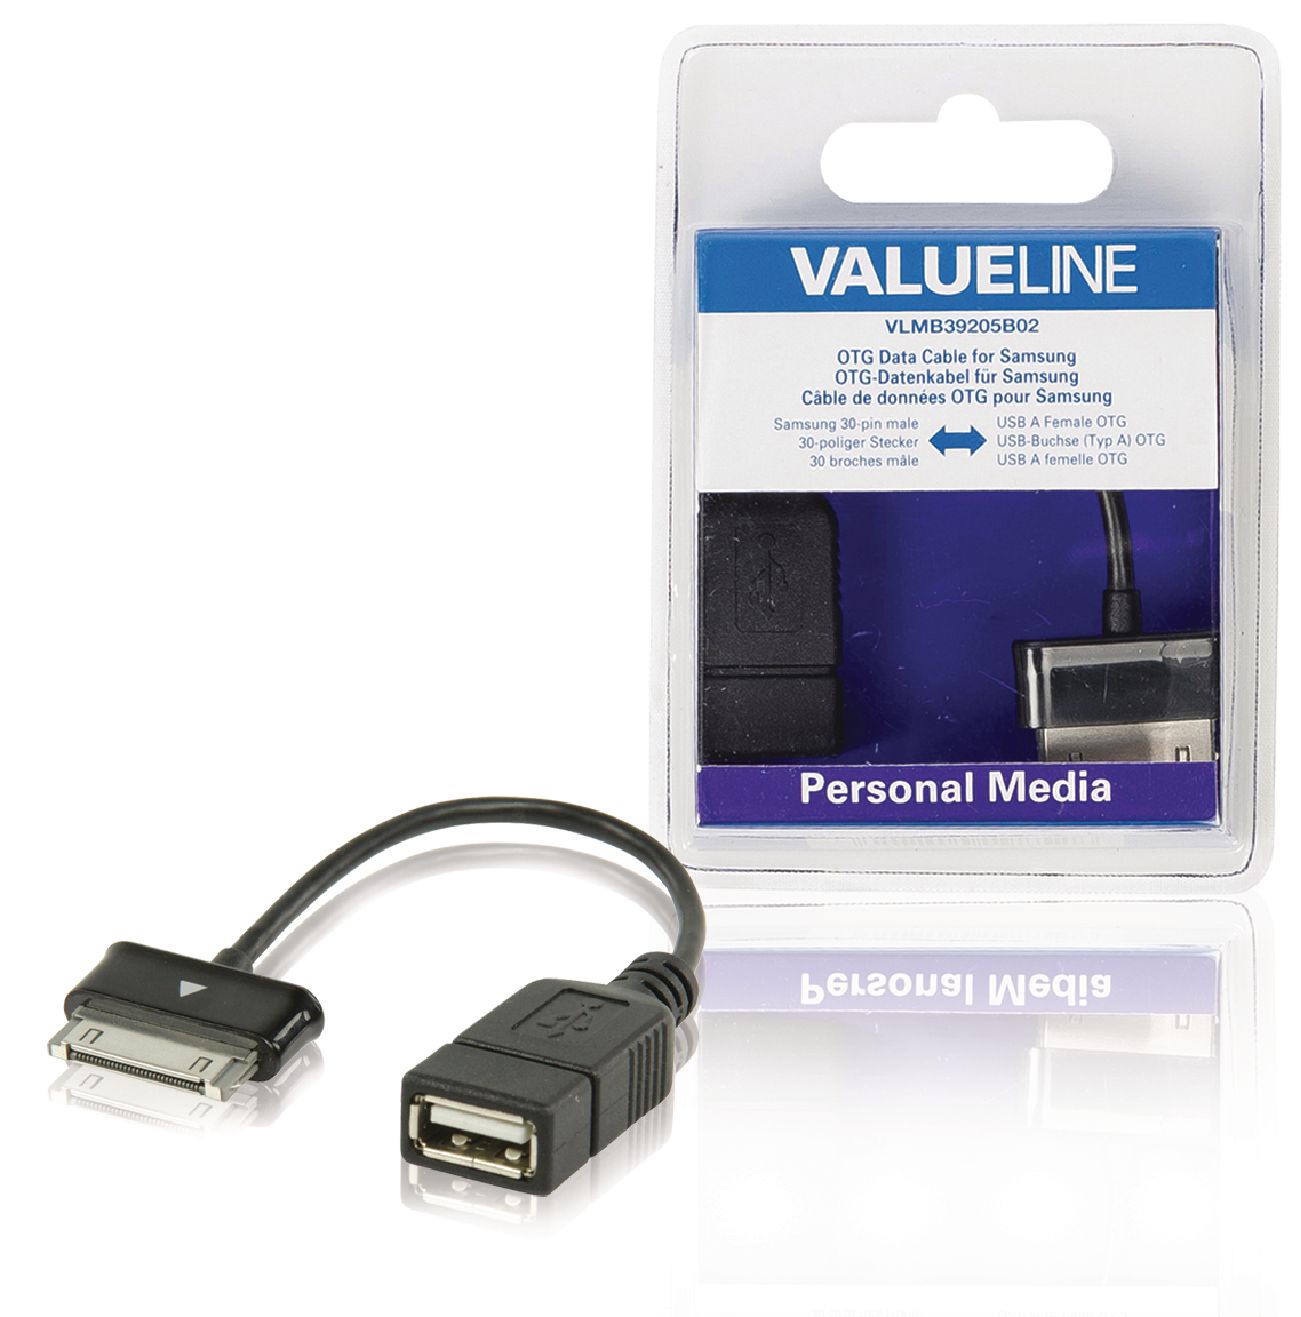 VALUELINE VLMB39205B02 Datový kabel OTG data pro zařízení Samsung, 30pinová zástrčka - zásuvka USB A, černý, 0,20 m